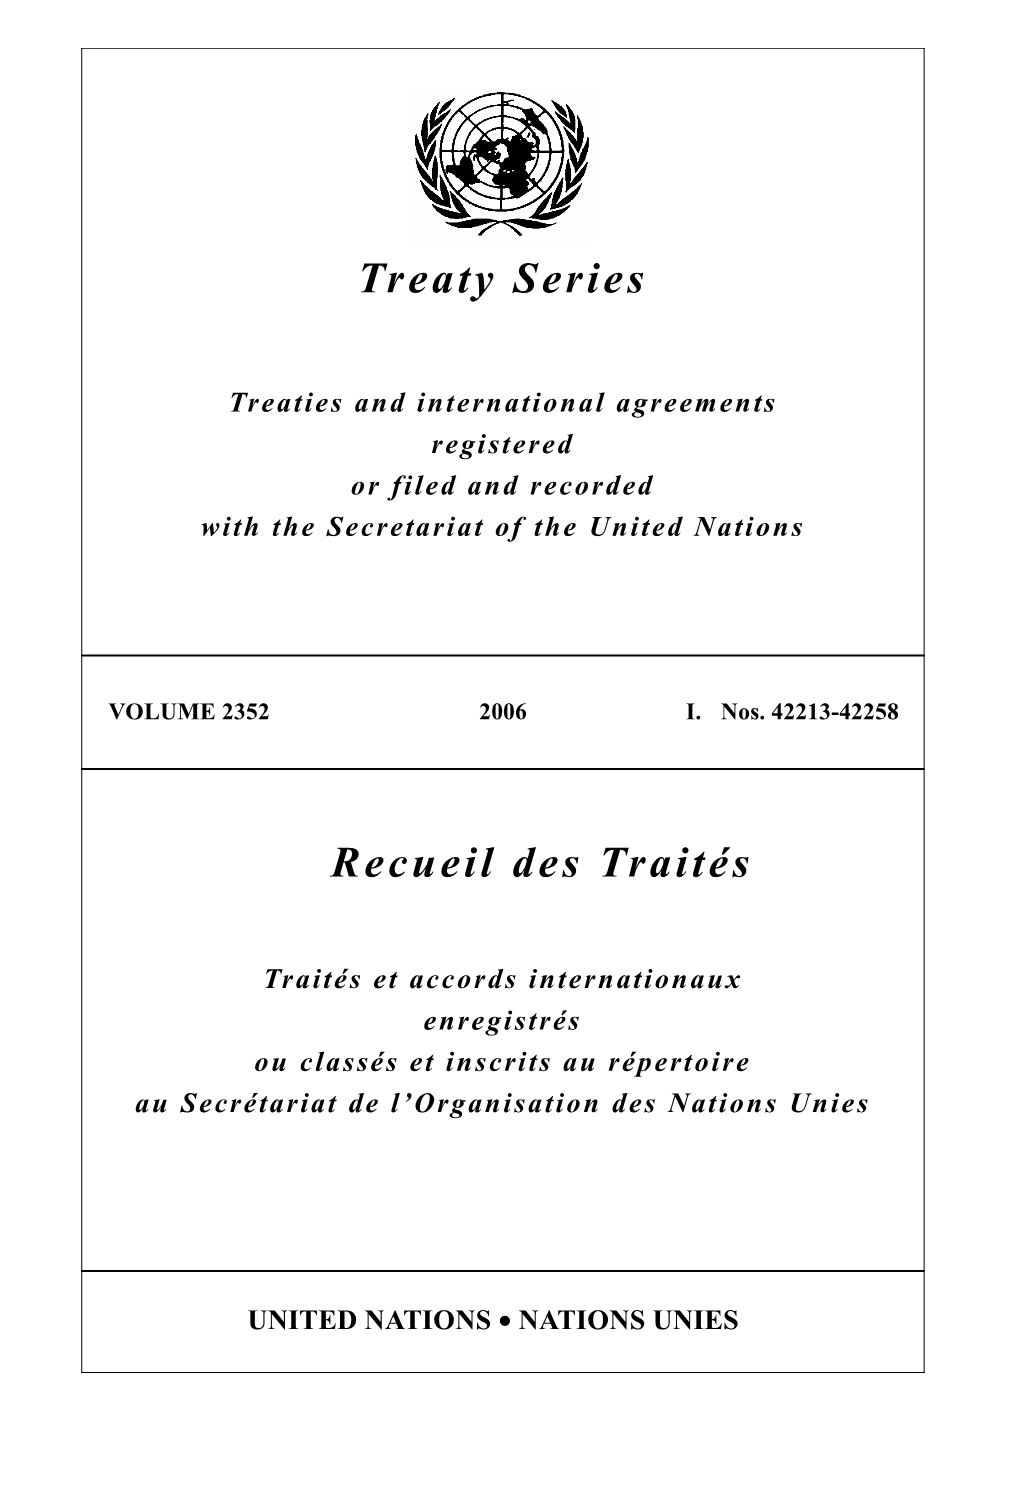 Treaty Series Recueil Des Traités